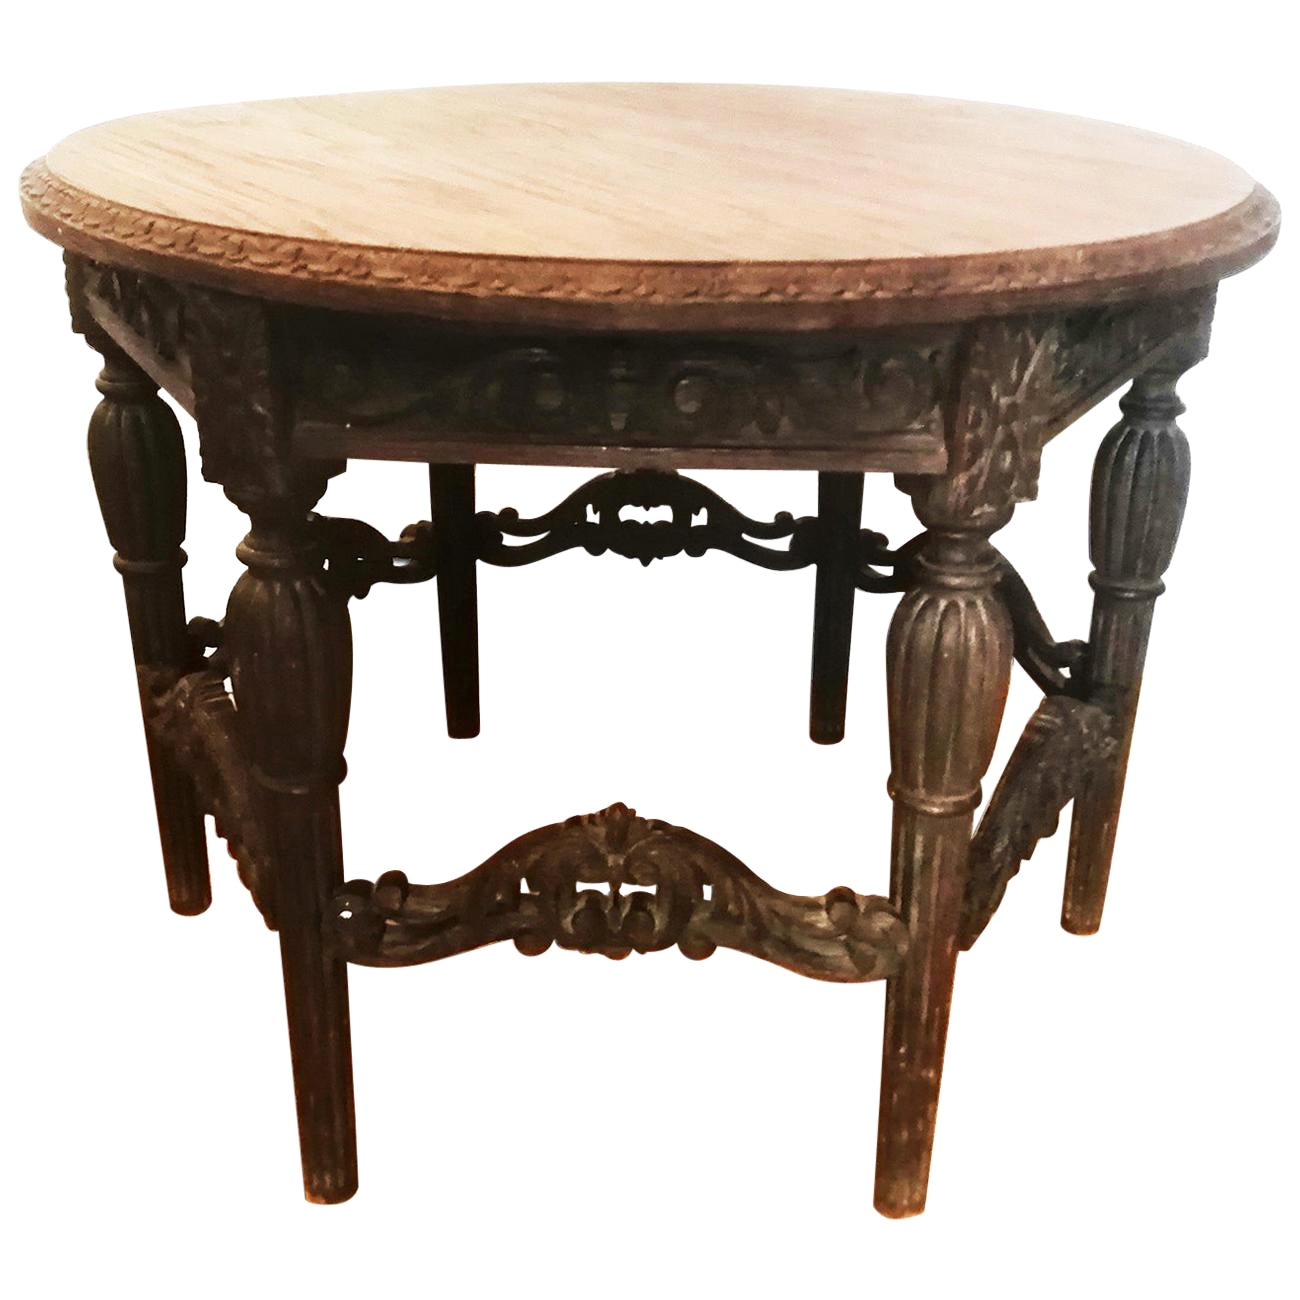 Antique Round Table Renaissance Revival 19th Century For Sale